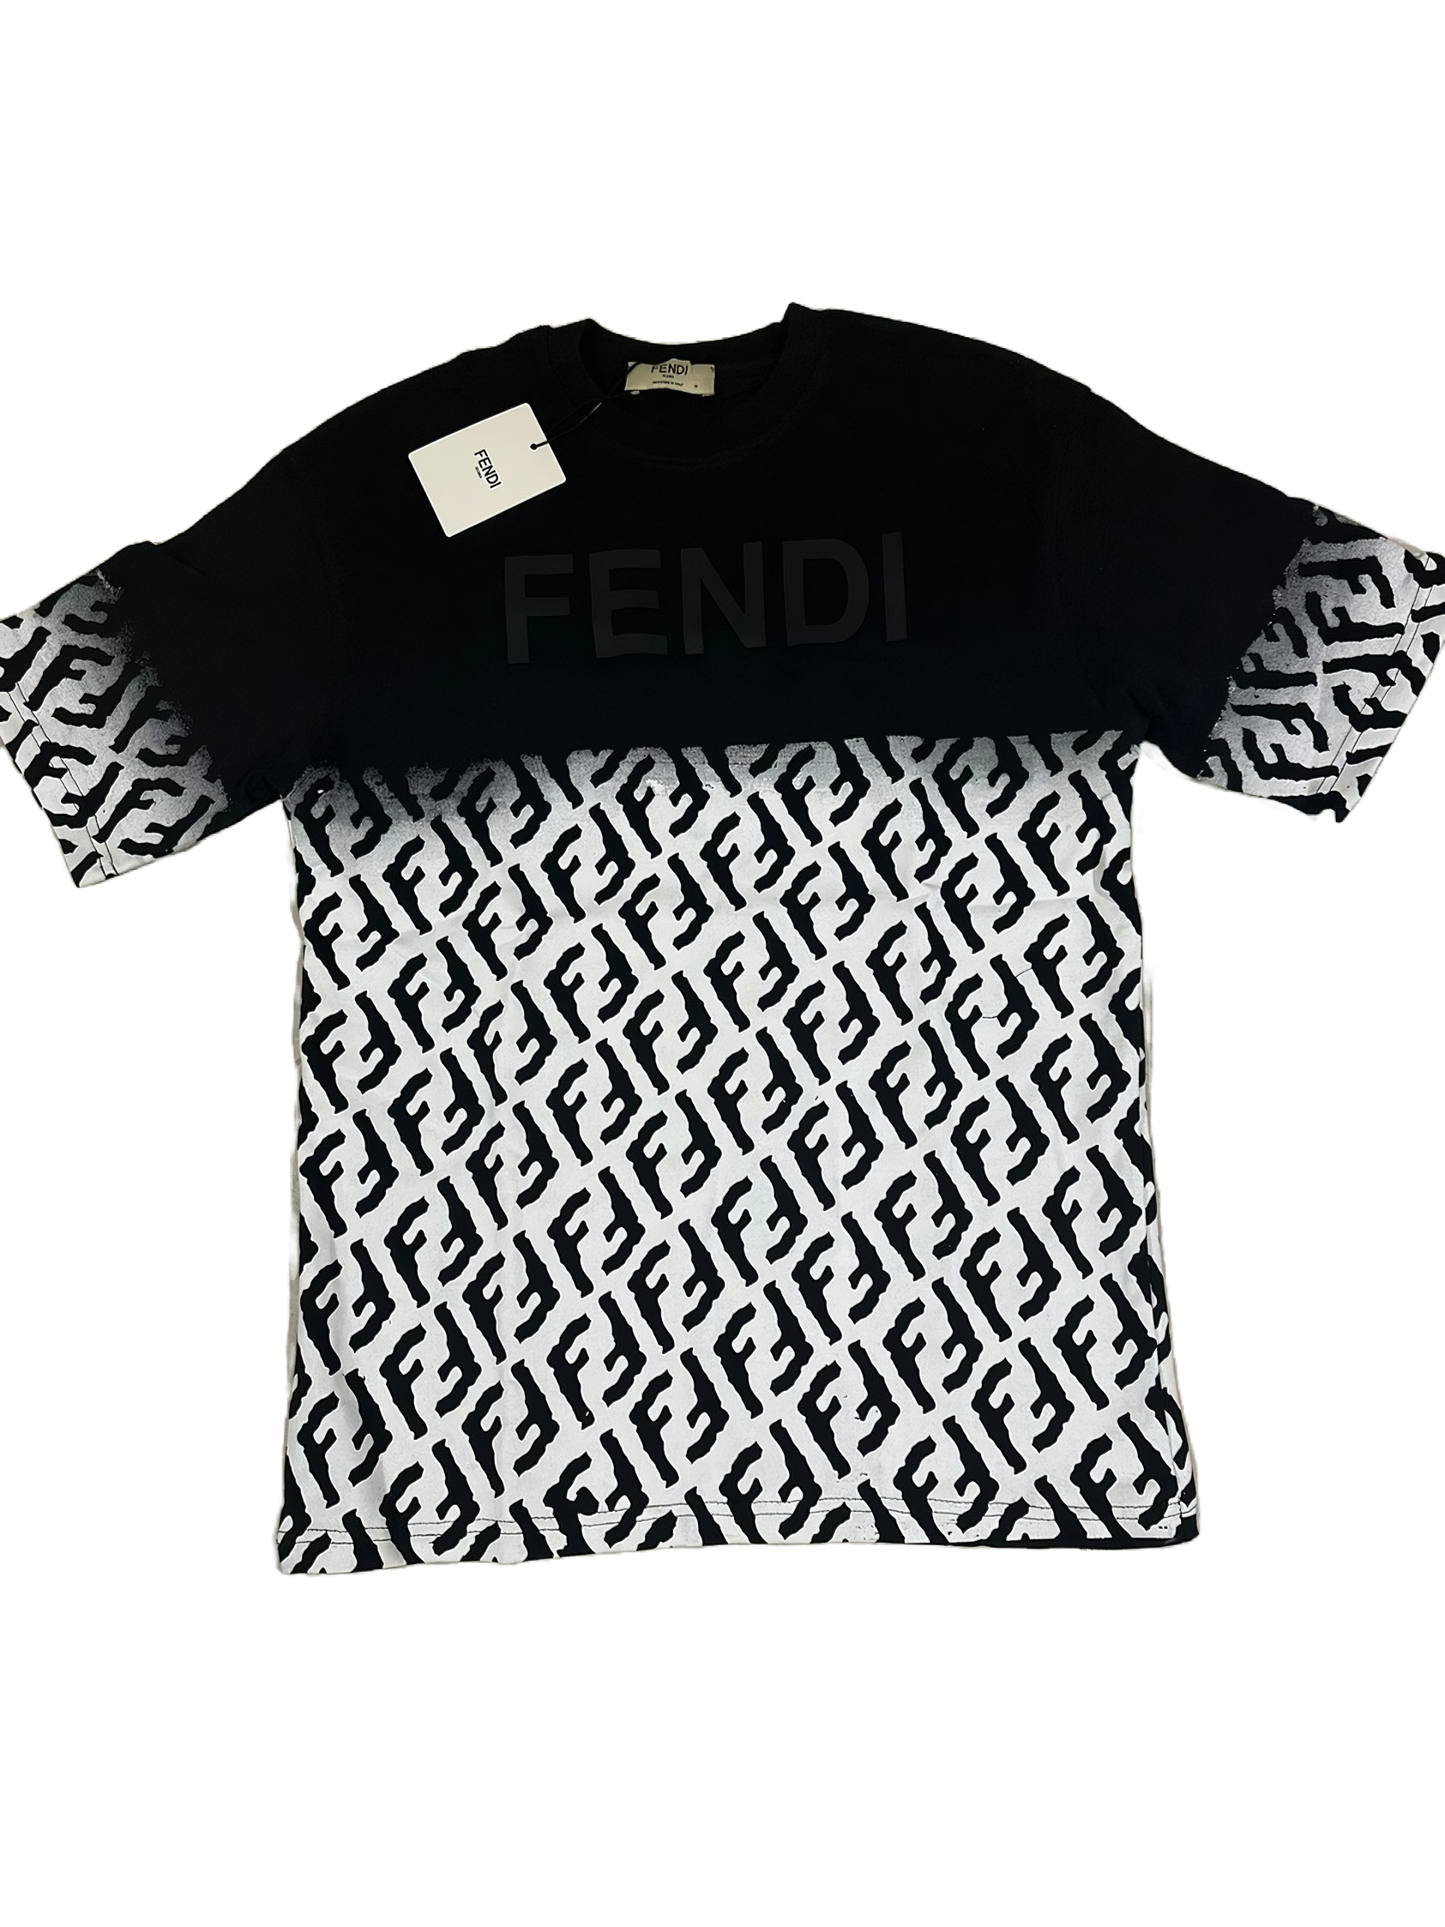 Fendi T Shirt black